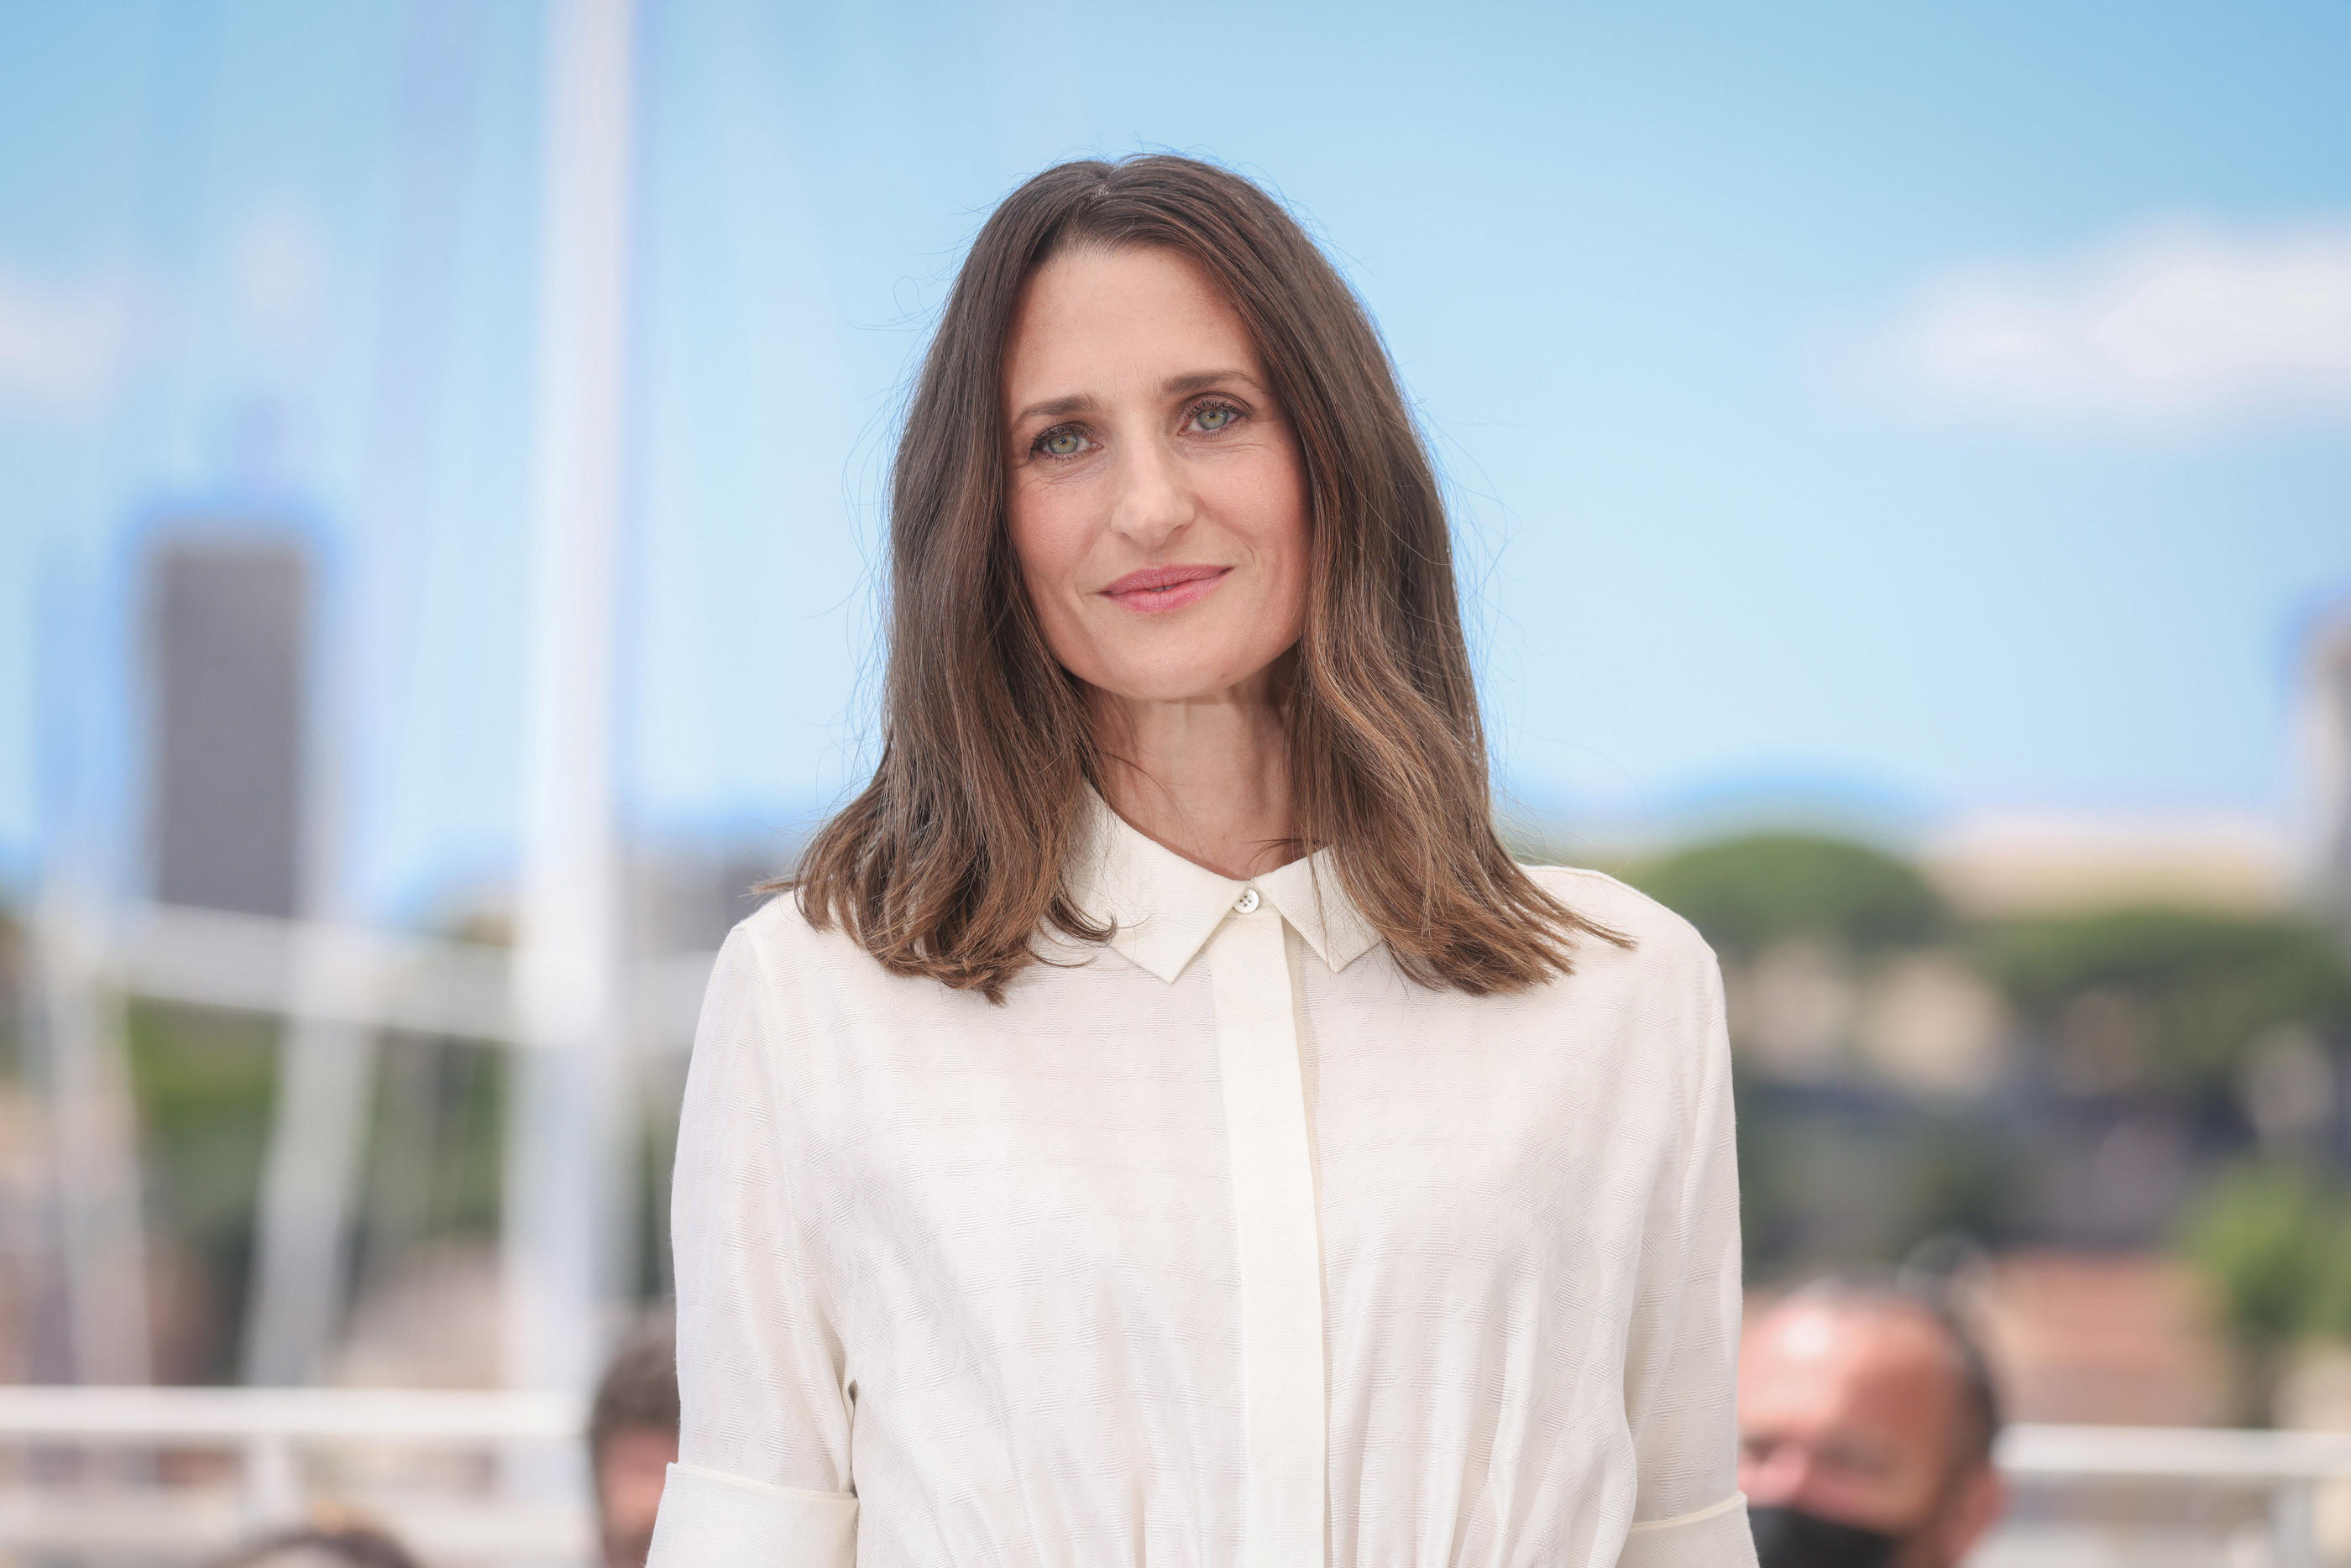 La comédienne Camille Cottin a salué la venue d'actrices et réalisatrices "profondément inspirantes" pendant le Festival de Cannes. LP/Fred Dugit